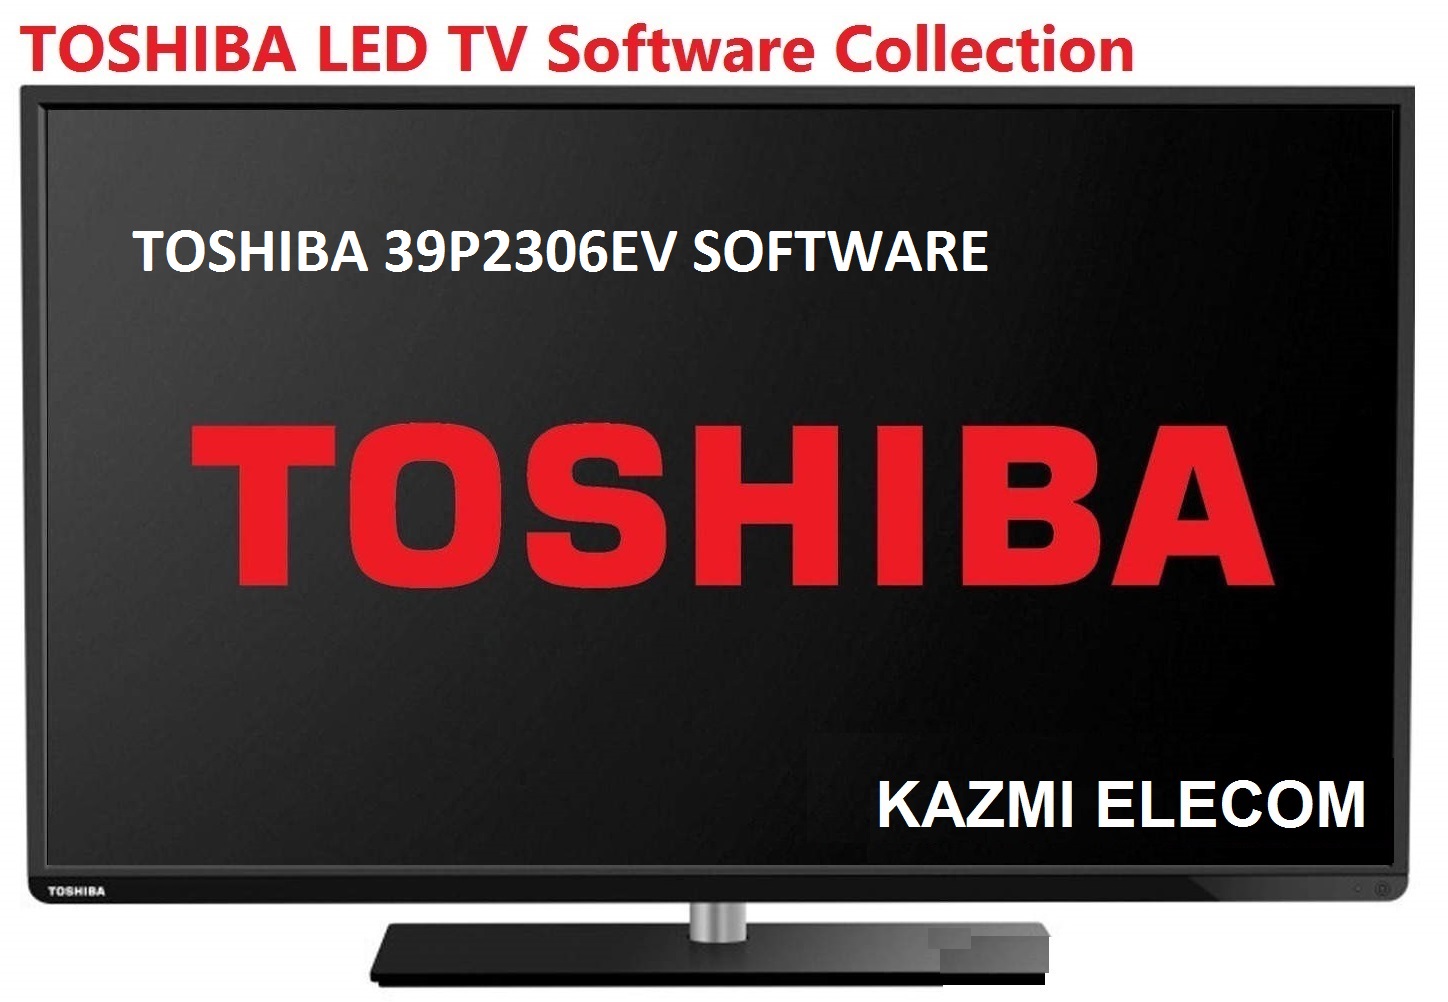 Toshiba 39P2306Ev